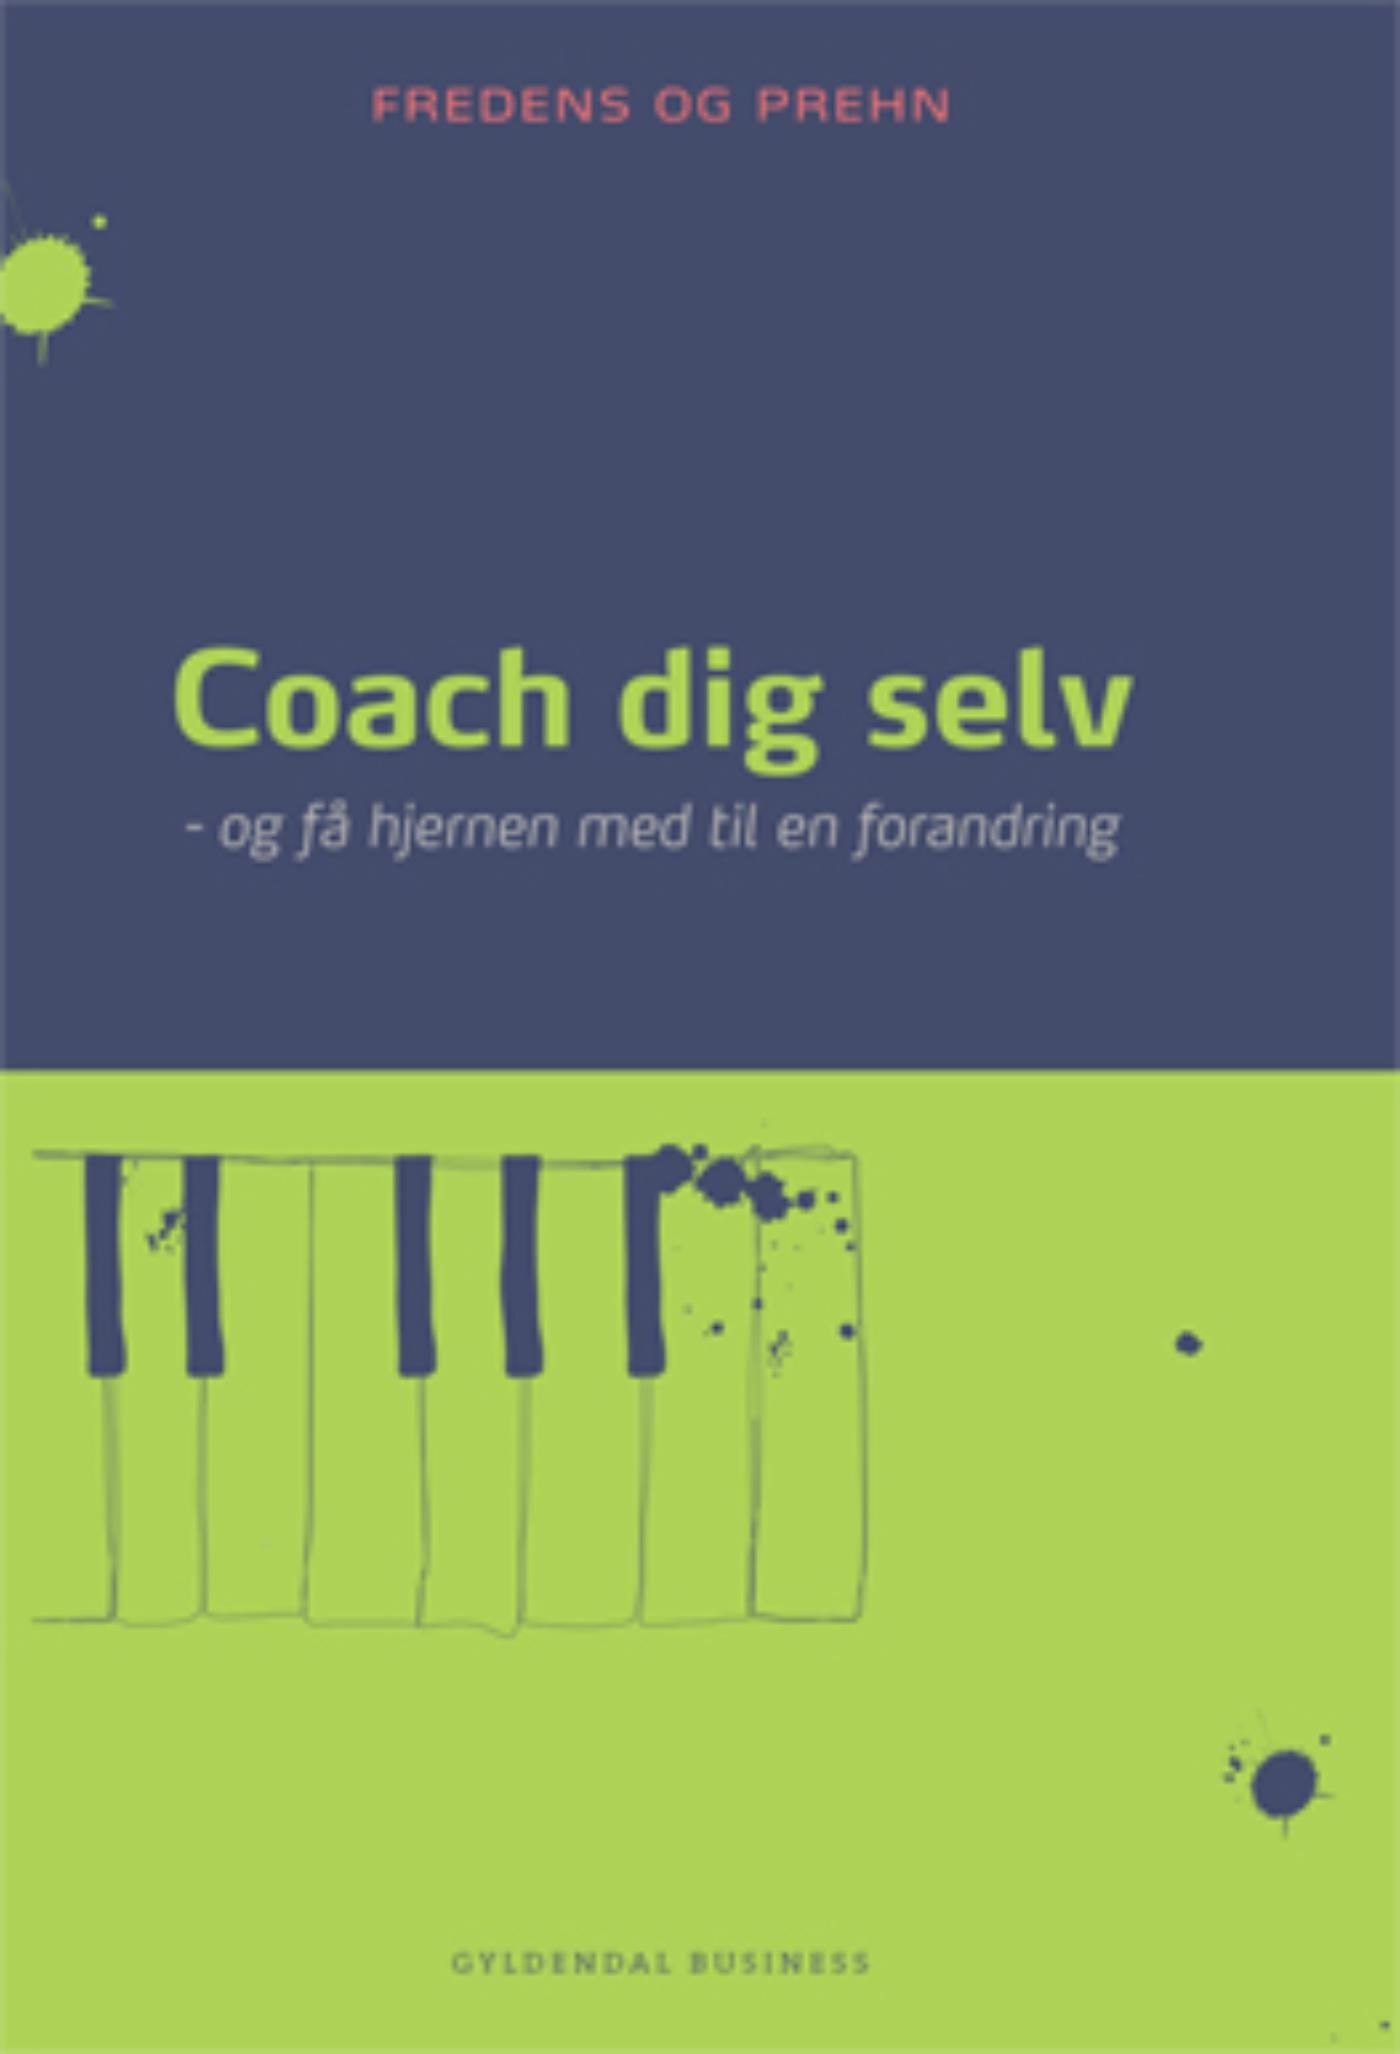 Coach dig selv, e-bok av Kjeld Fredens, Anette Prehn